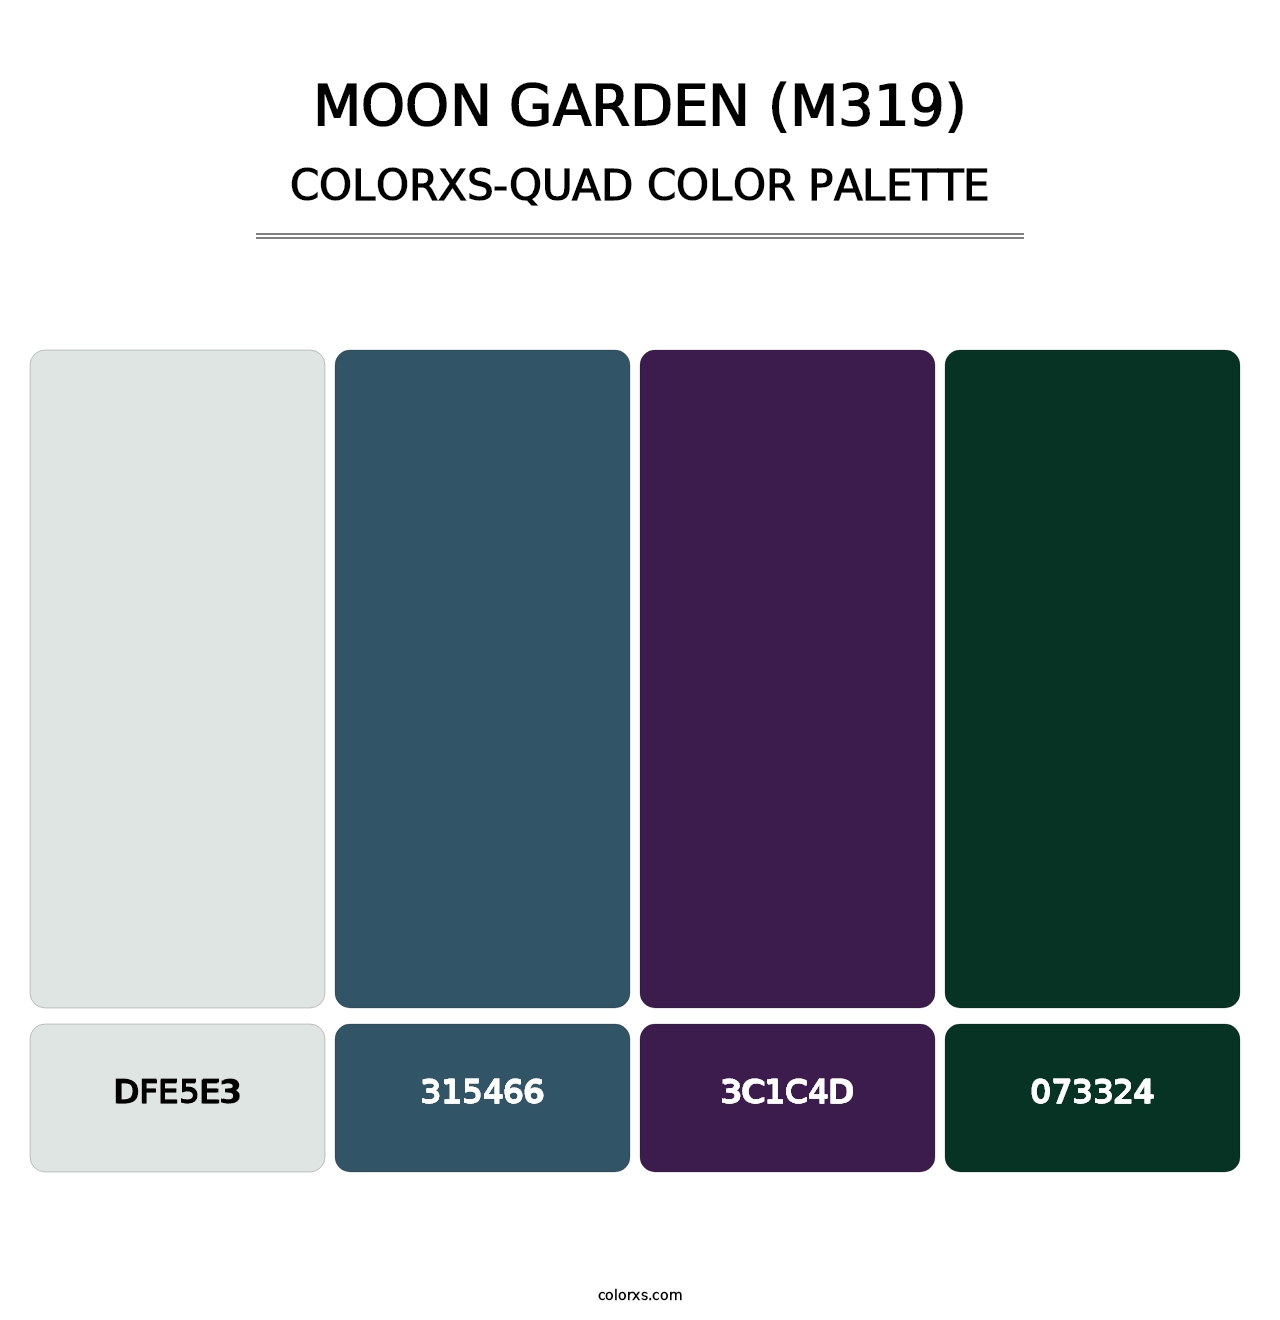 Moon Garden (M319) - Colorxs Quad Palette